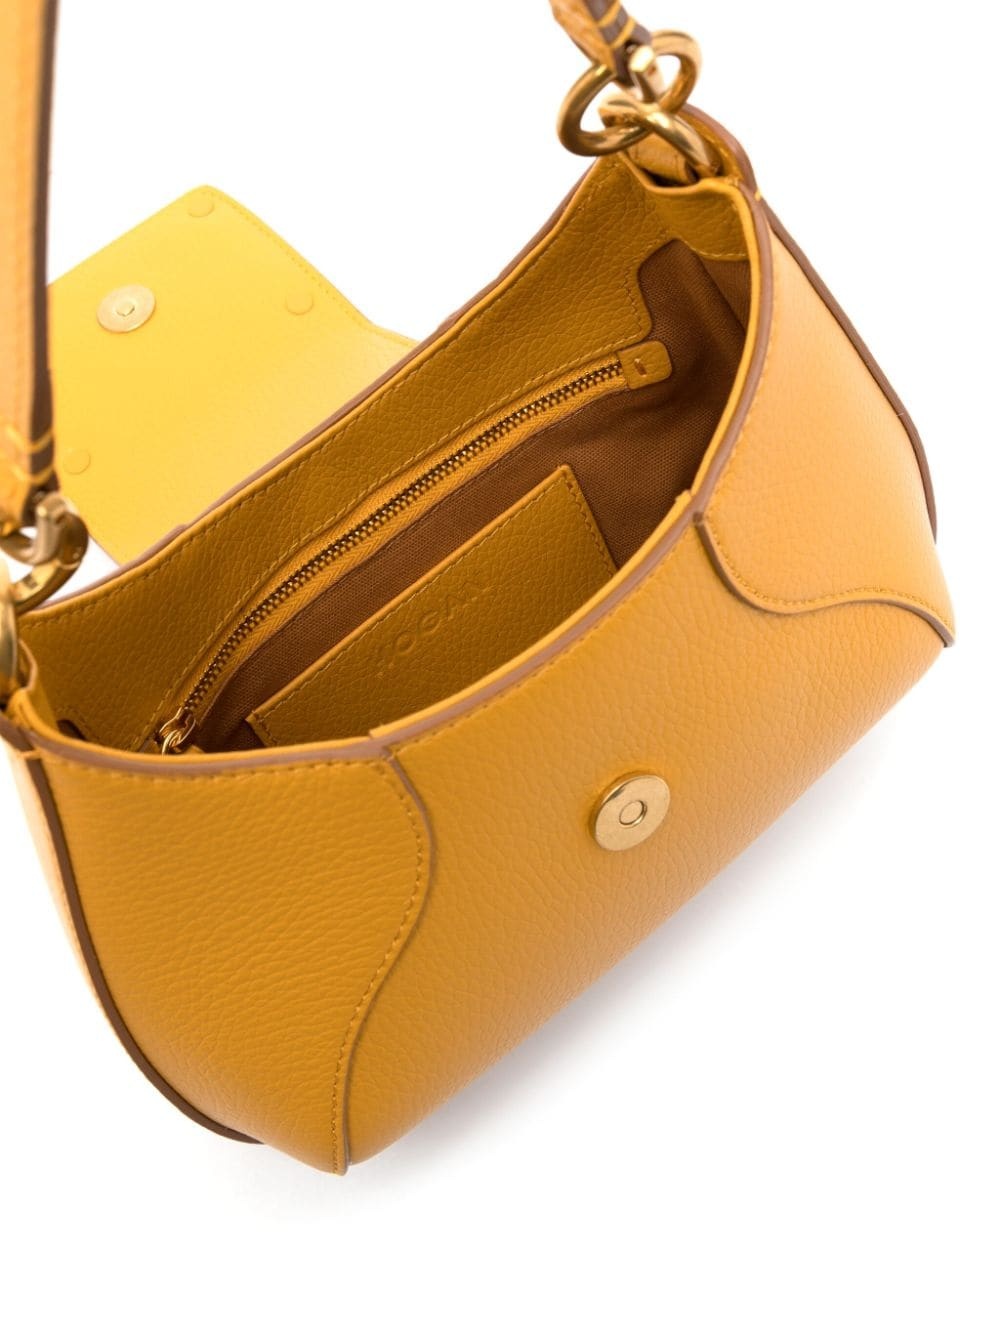 H-bag hobo mini leather handbag - 2